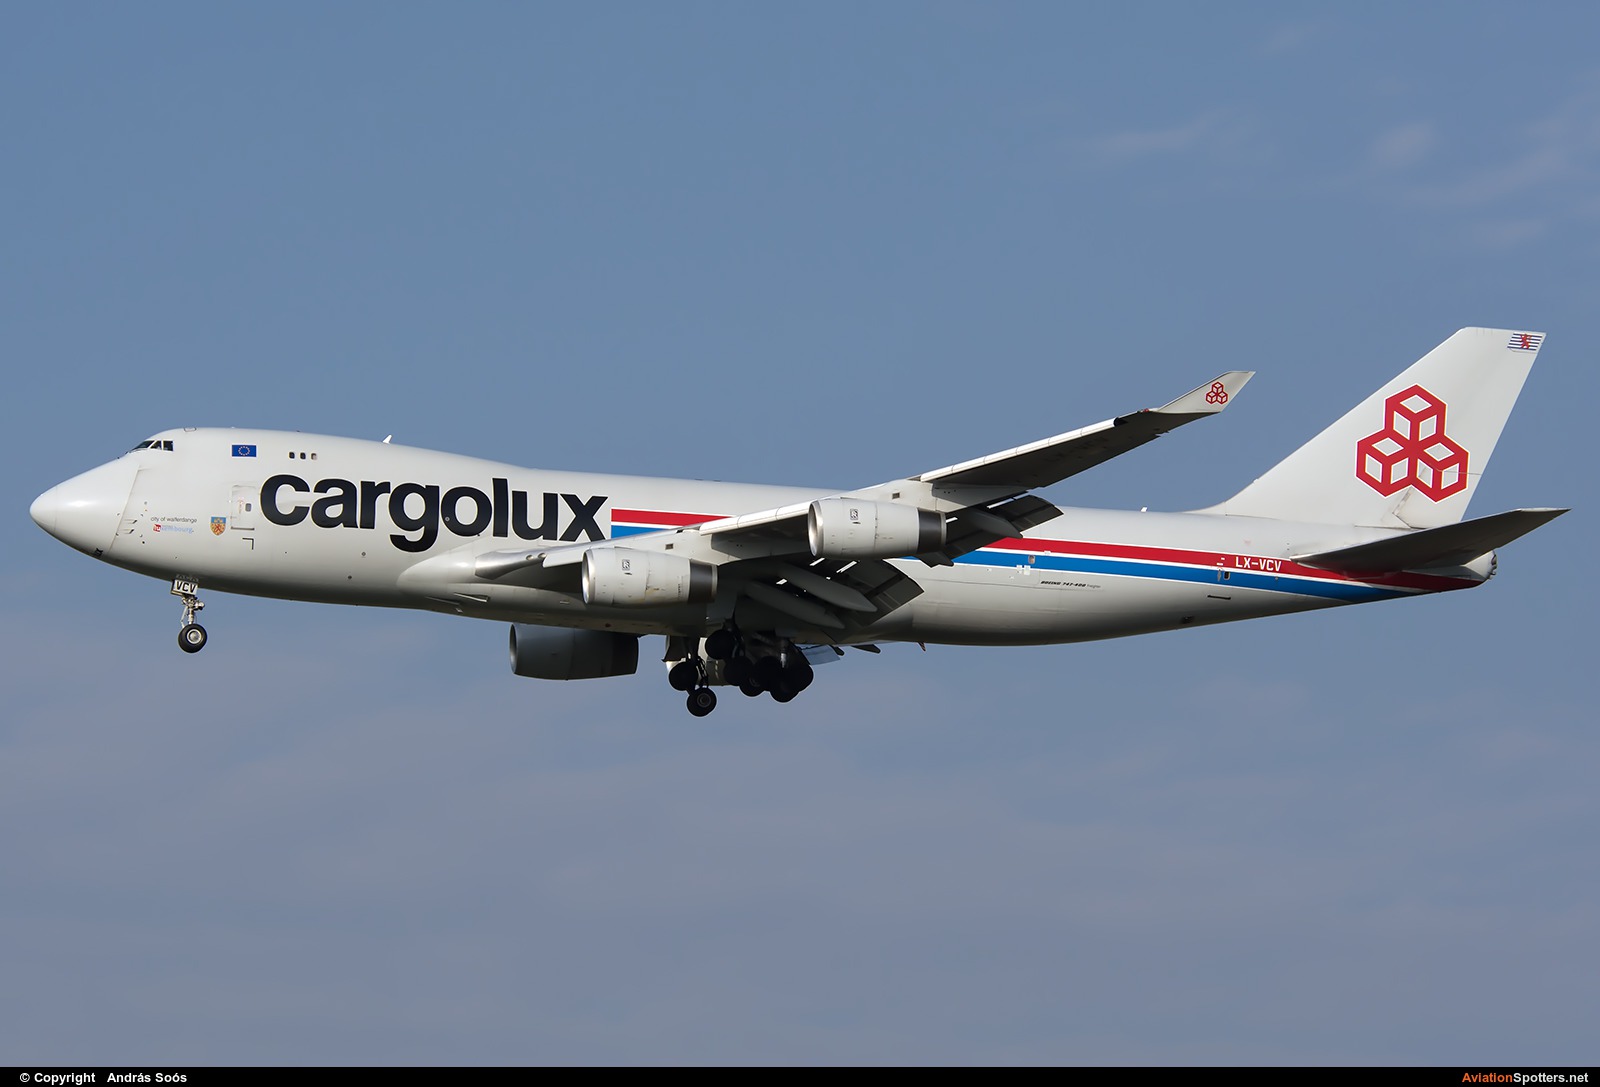 Cargolux  -  747-400F  (LX-VCV) By András Soós (sas1965)